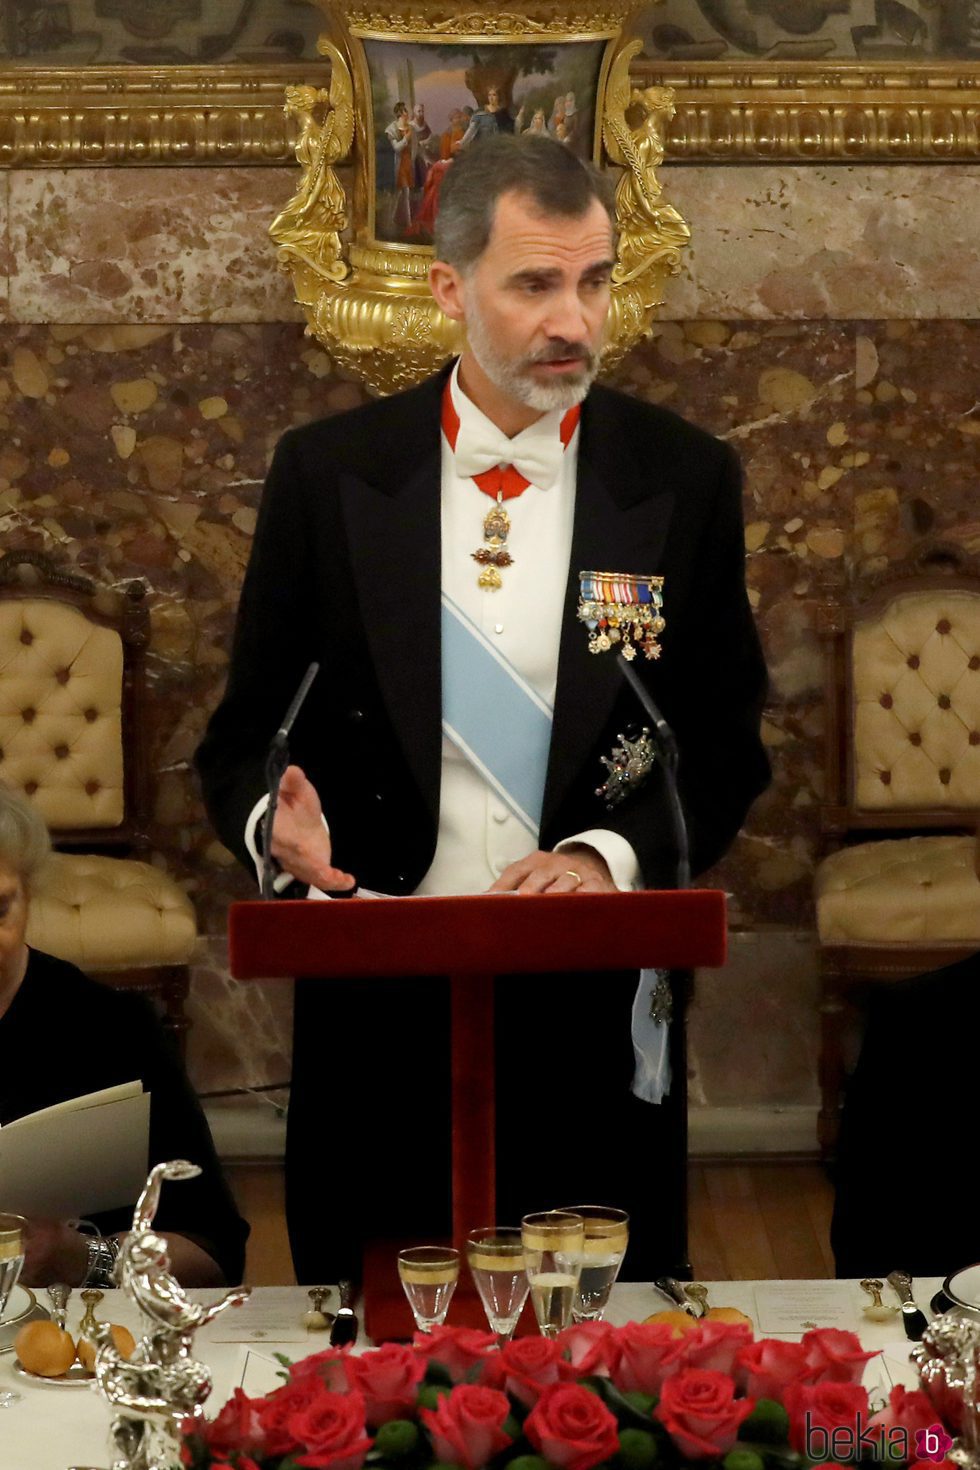 El Rey Felipe dando un discurso en la cena de gala en honor al presidente de Israel